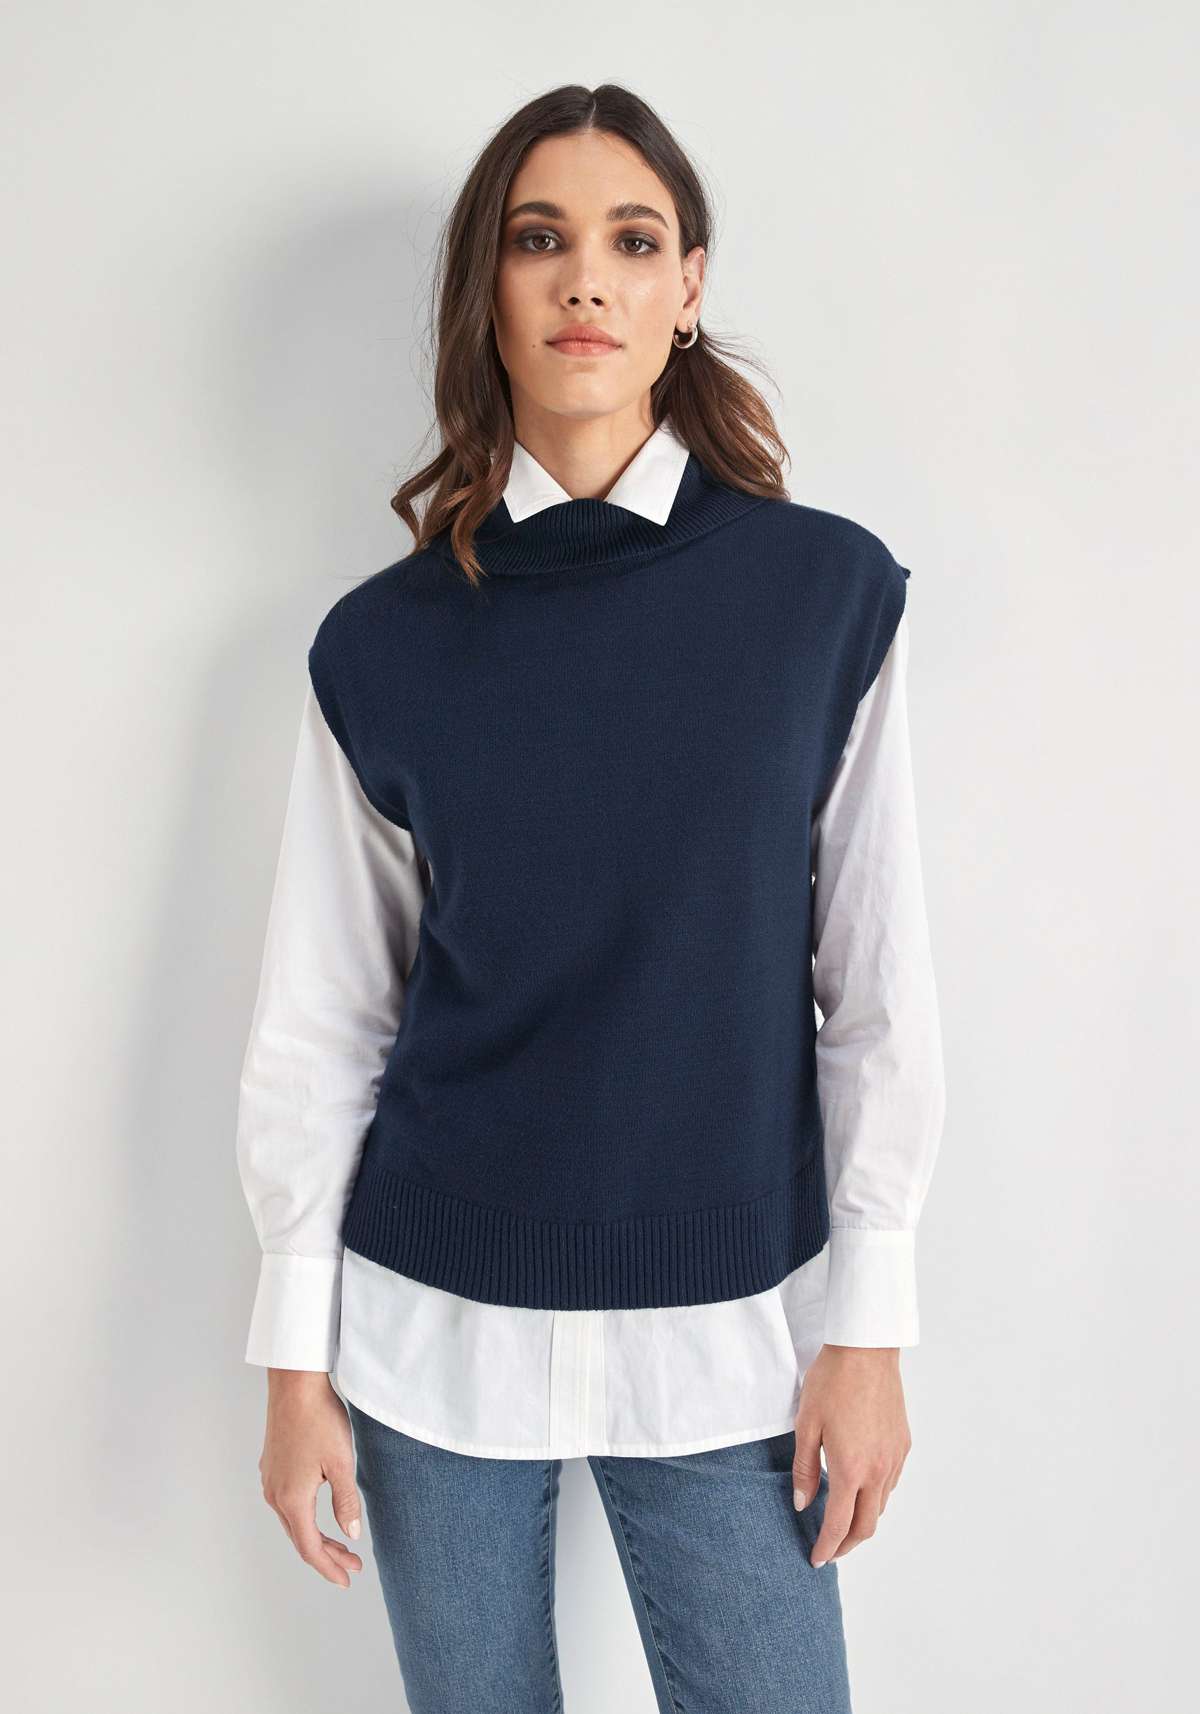 Пуловер из высококачественного материала.